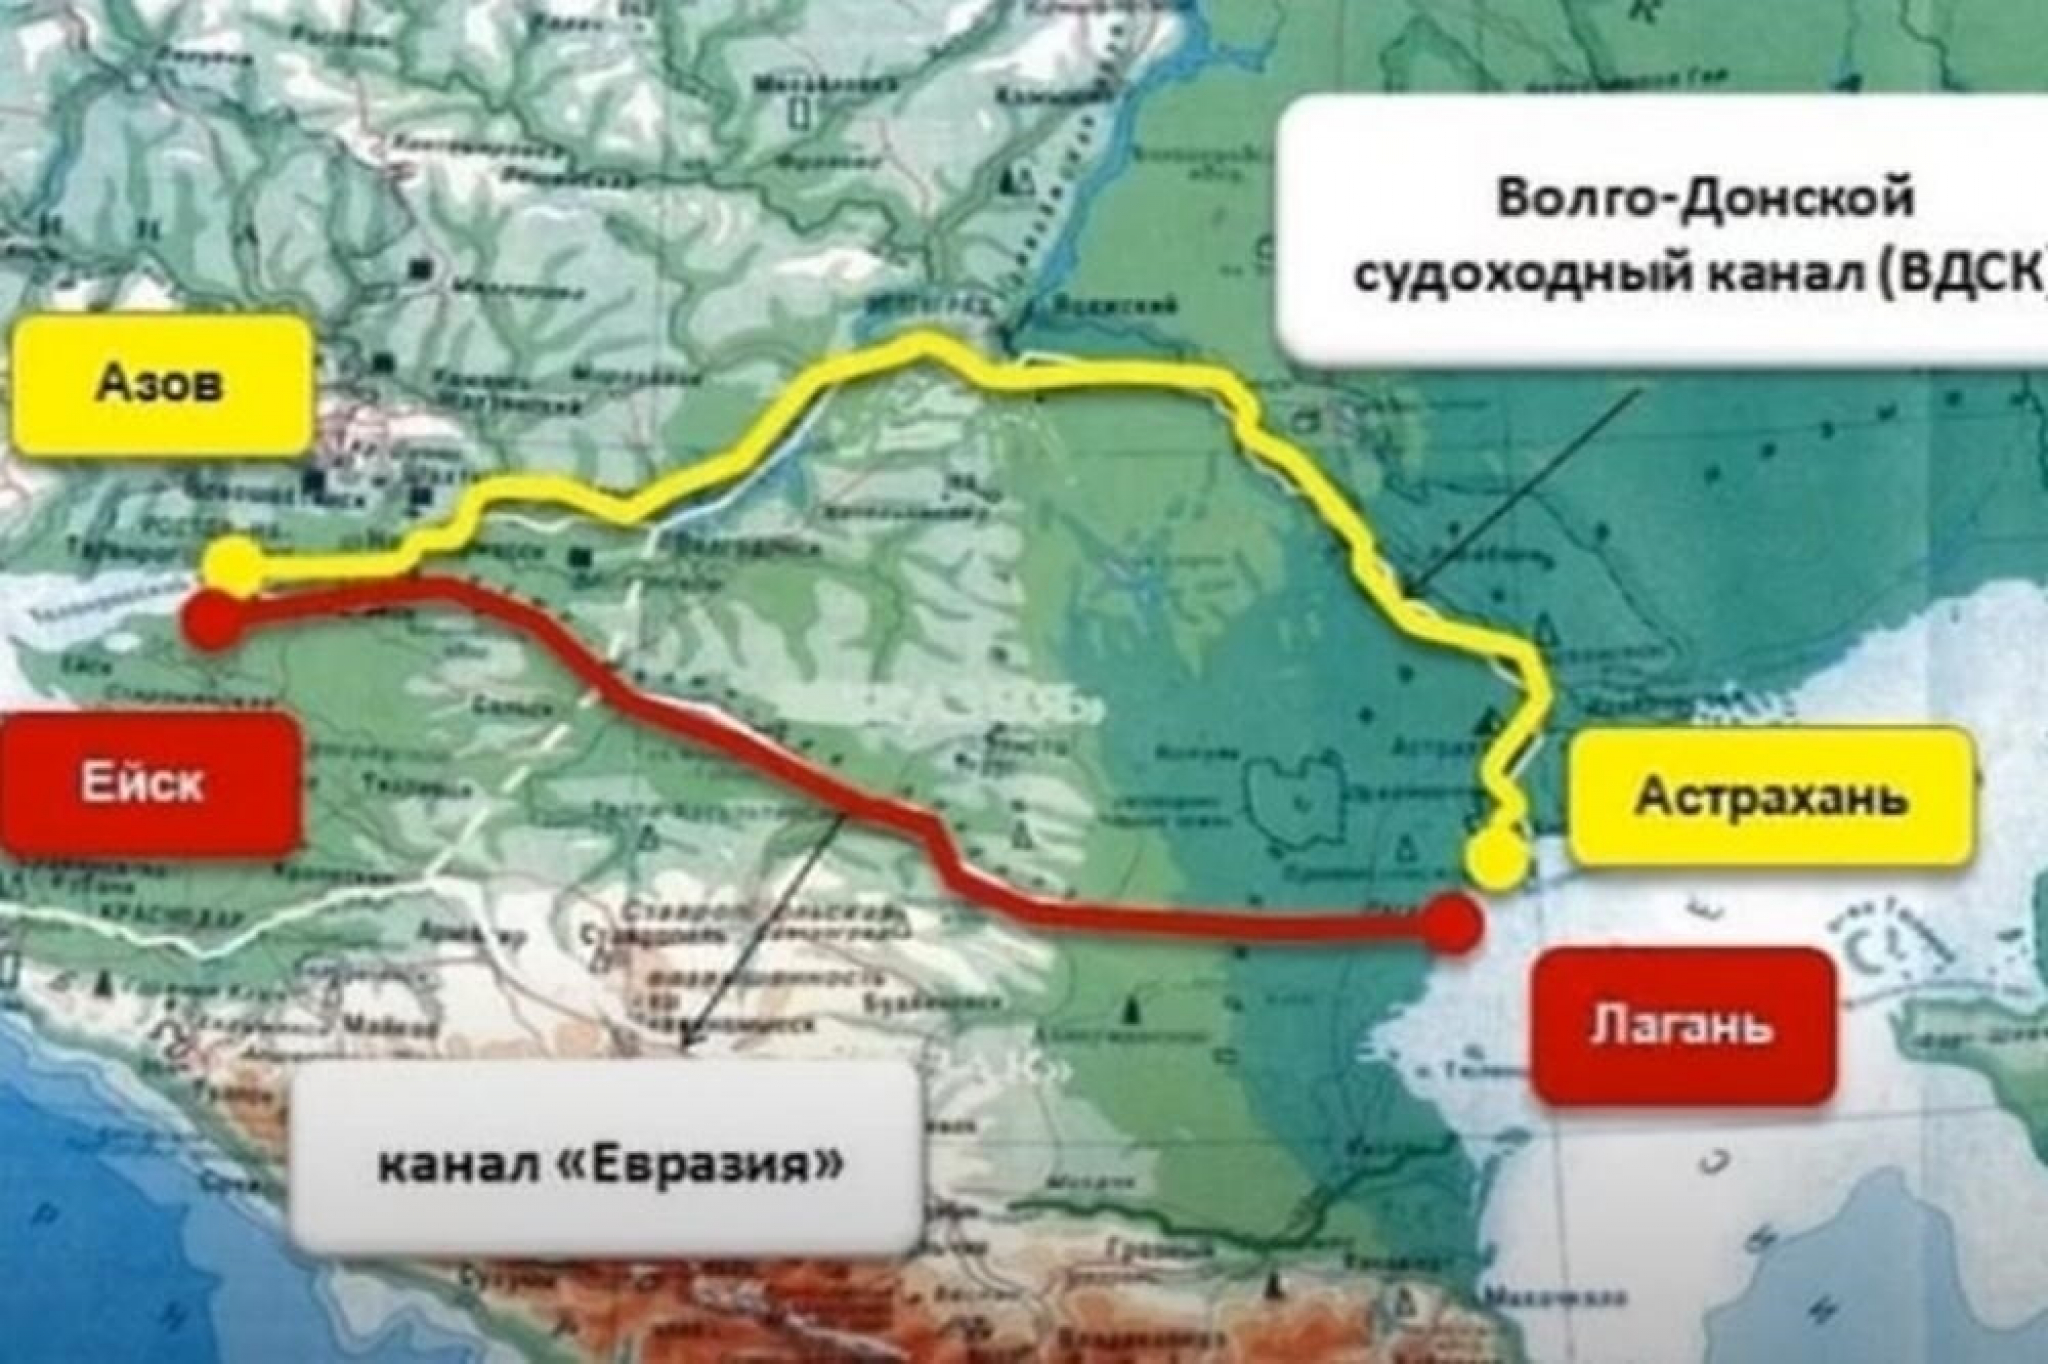 Судоходный канал Каспий - черное море (Азовское)